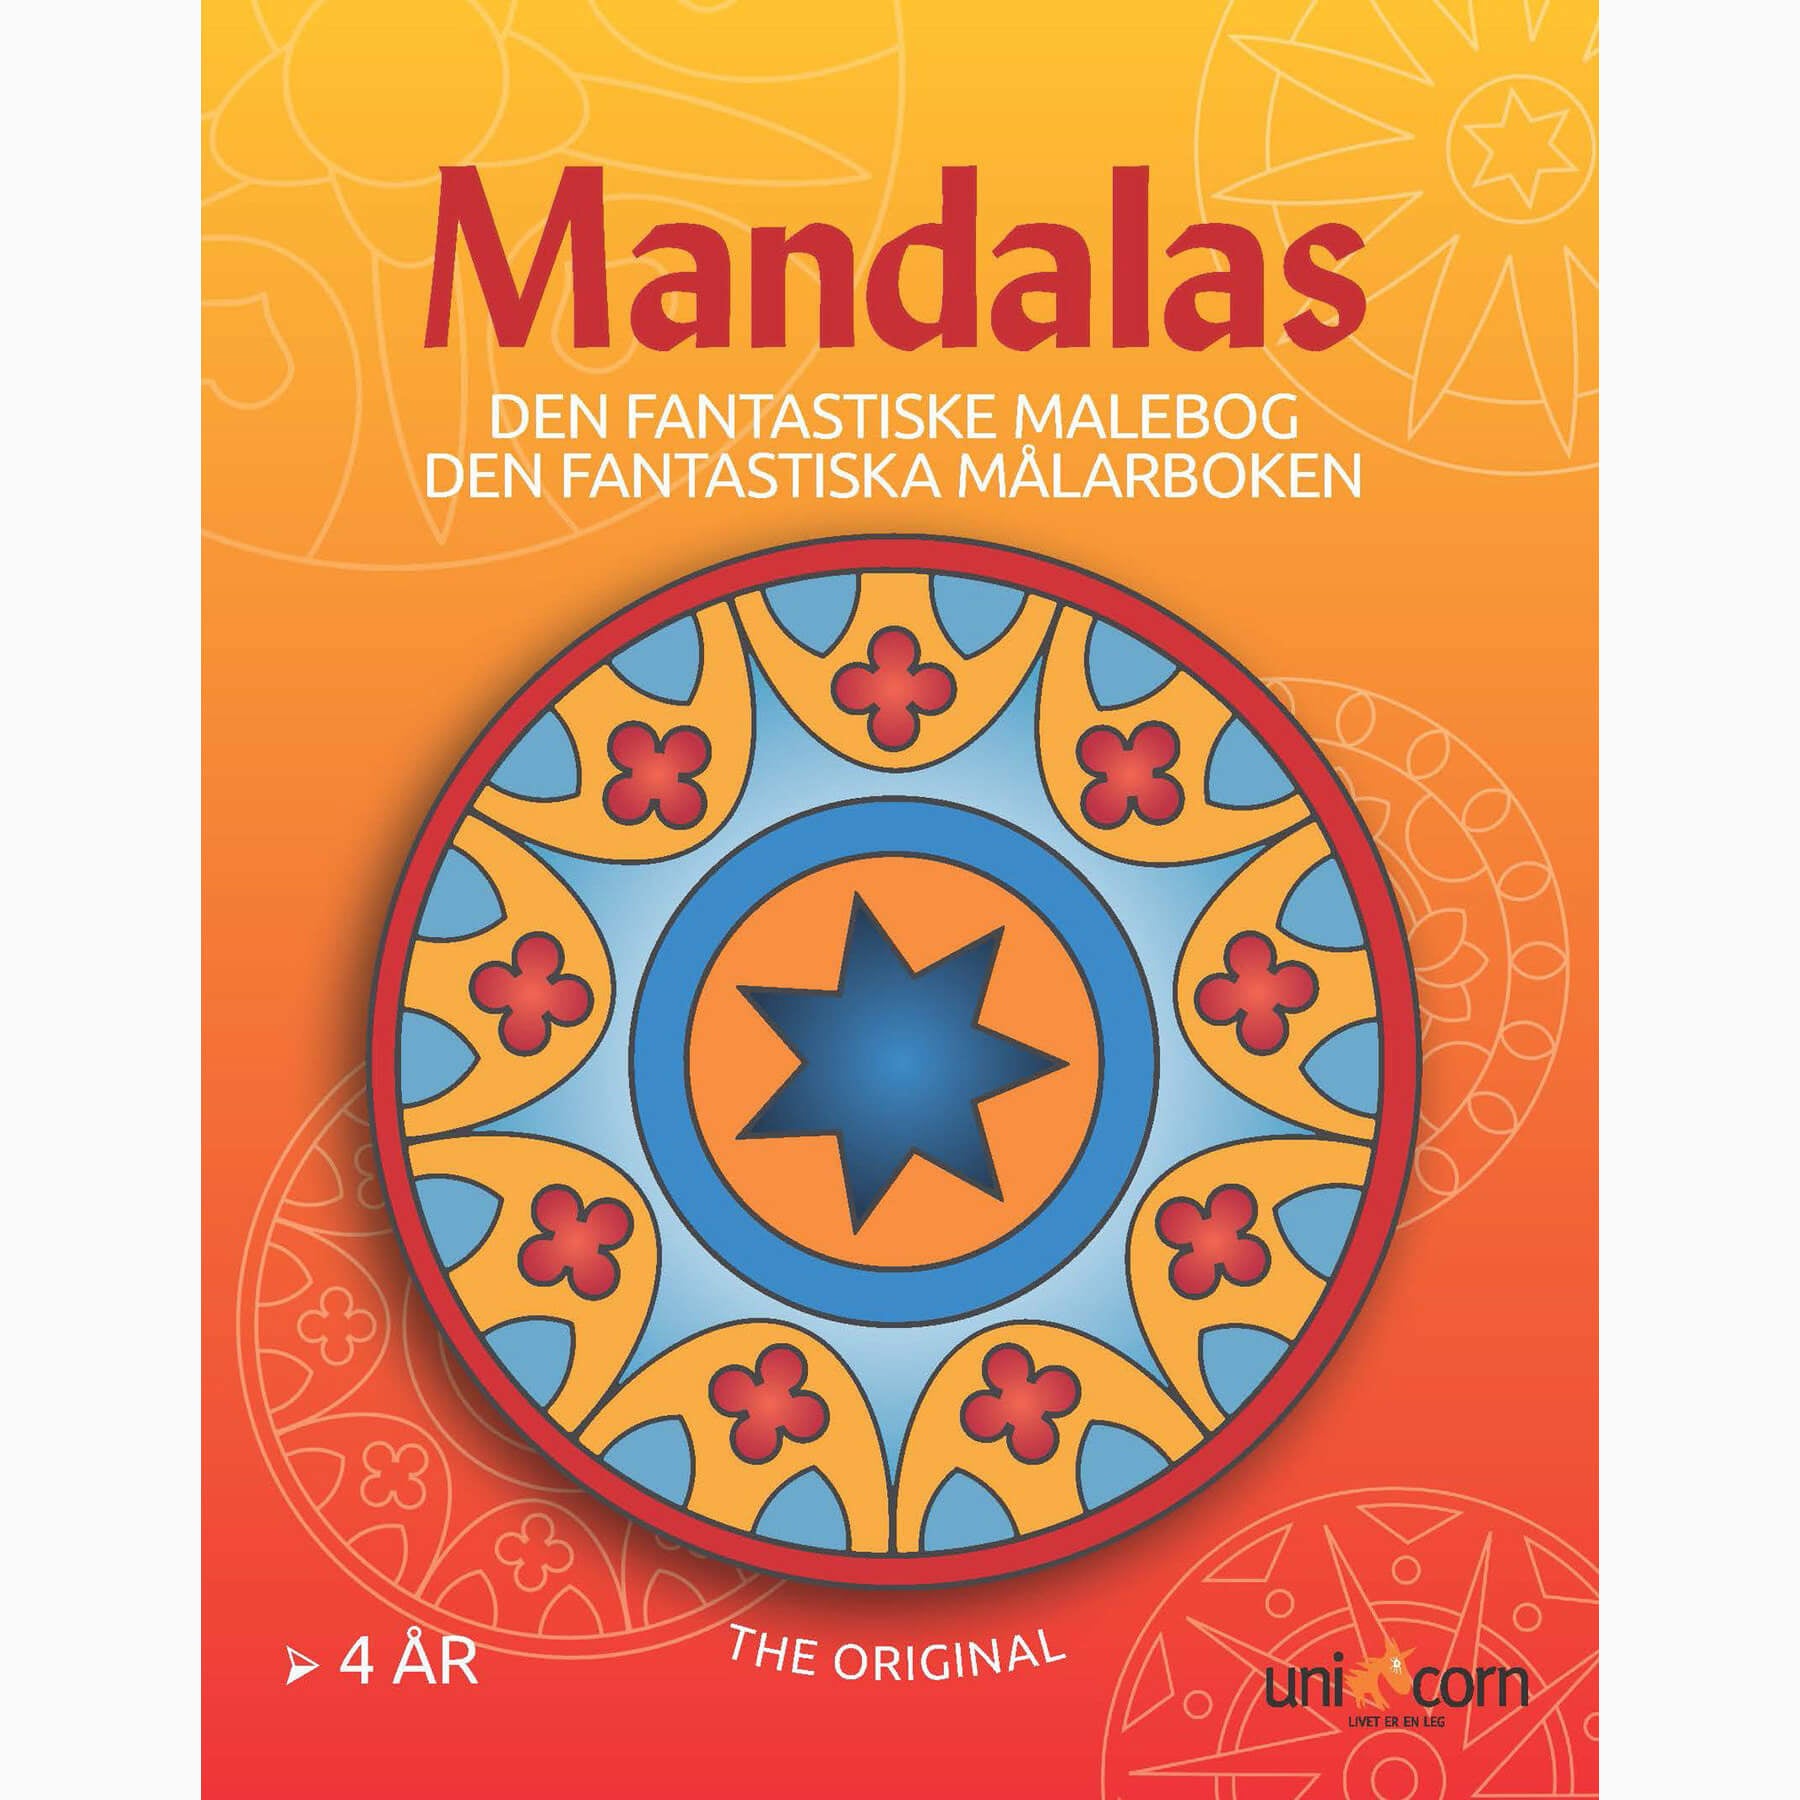 Mandalas - Den Fantastiske Malebog med Mandalas fra 4 år